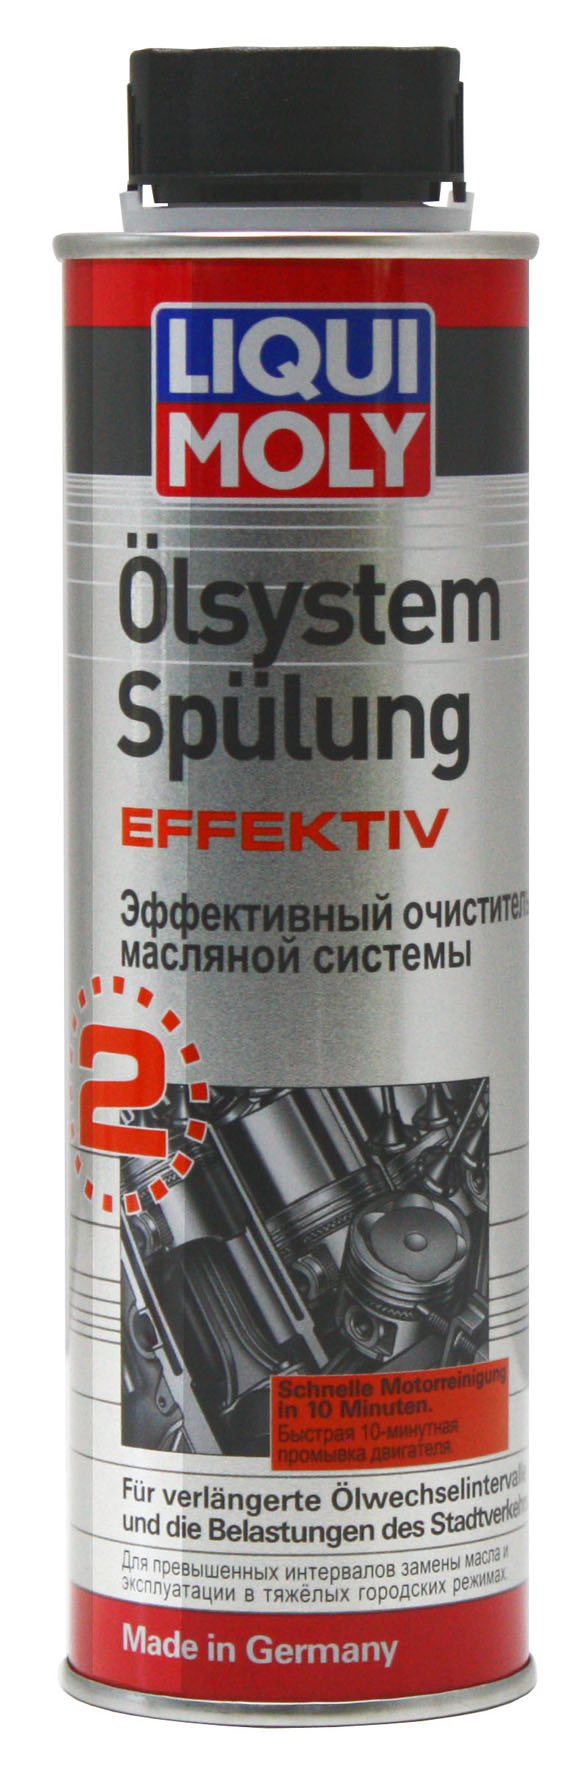 Очиститель масляной системы Olsystem Spuling effektiv 0.3л